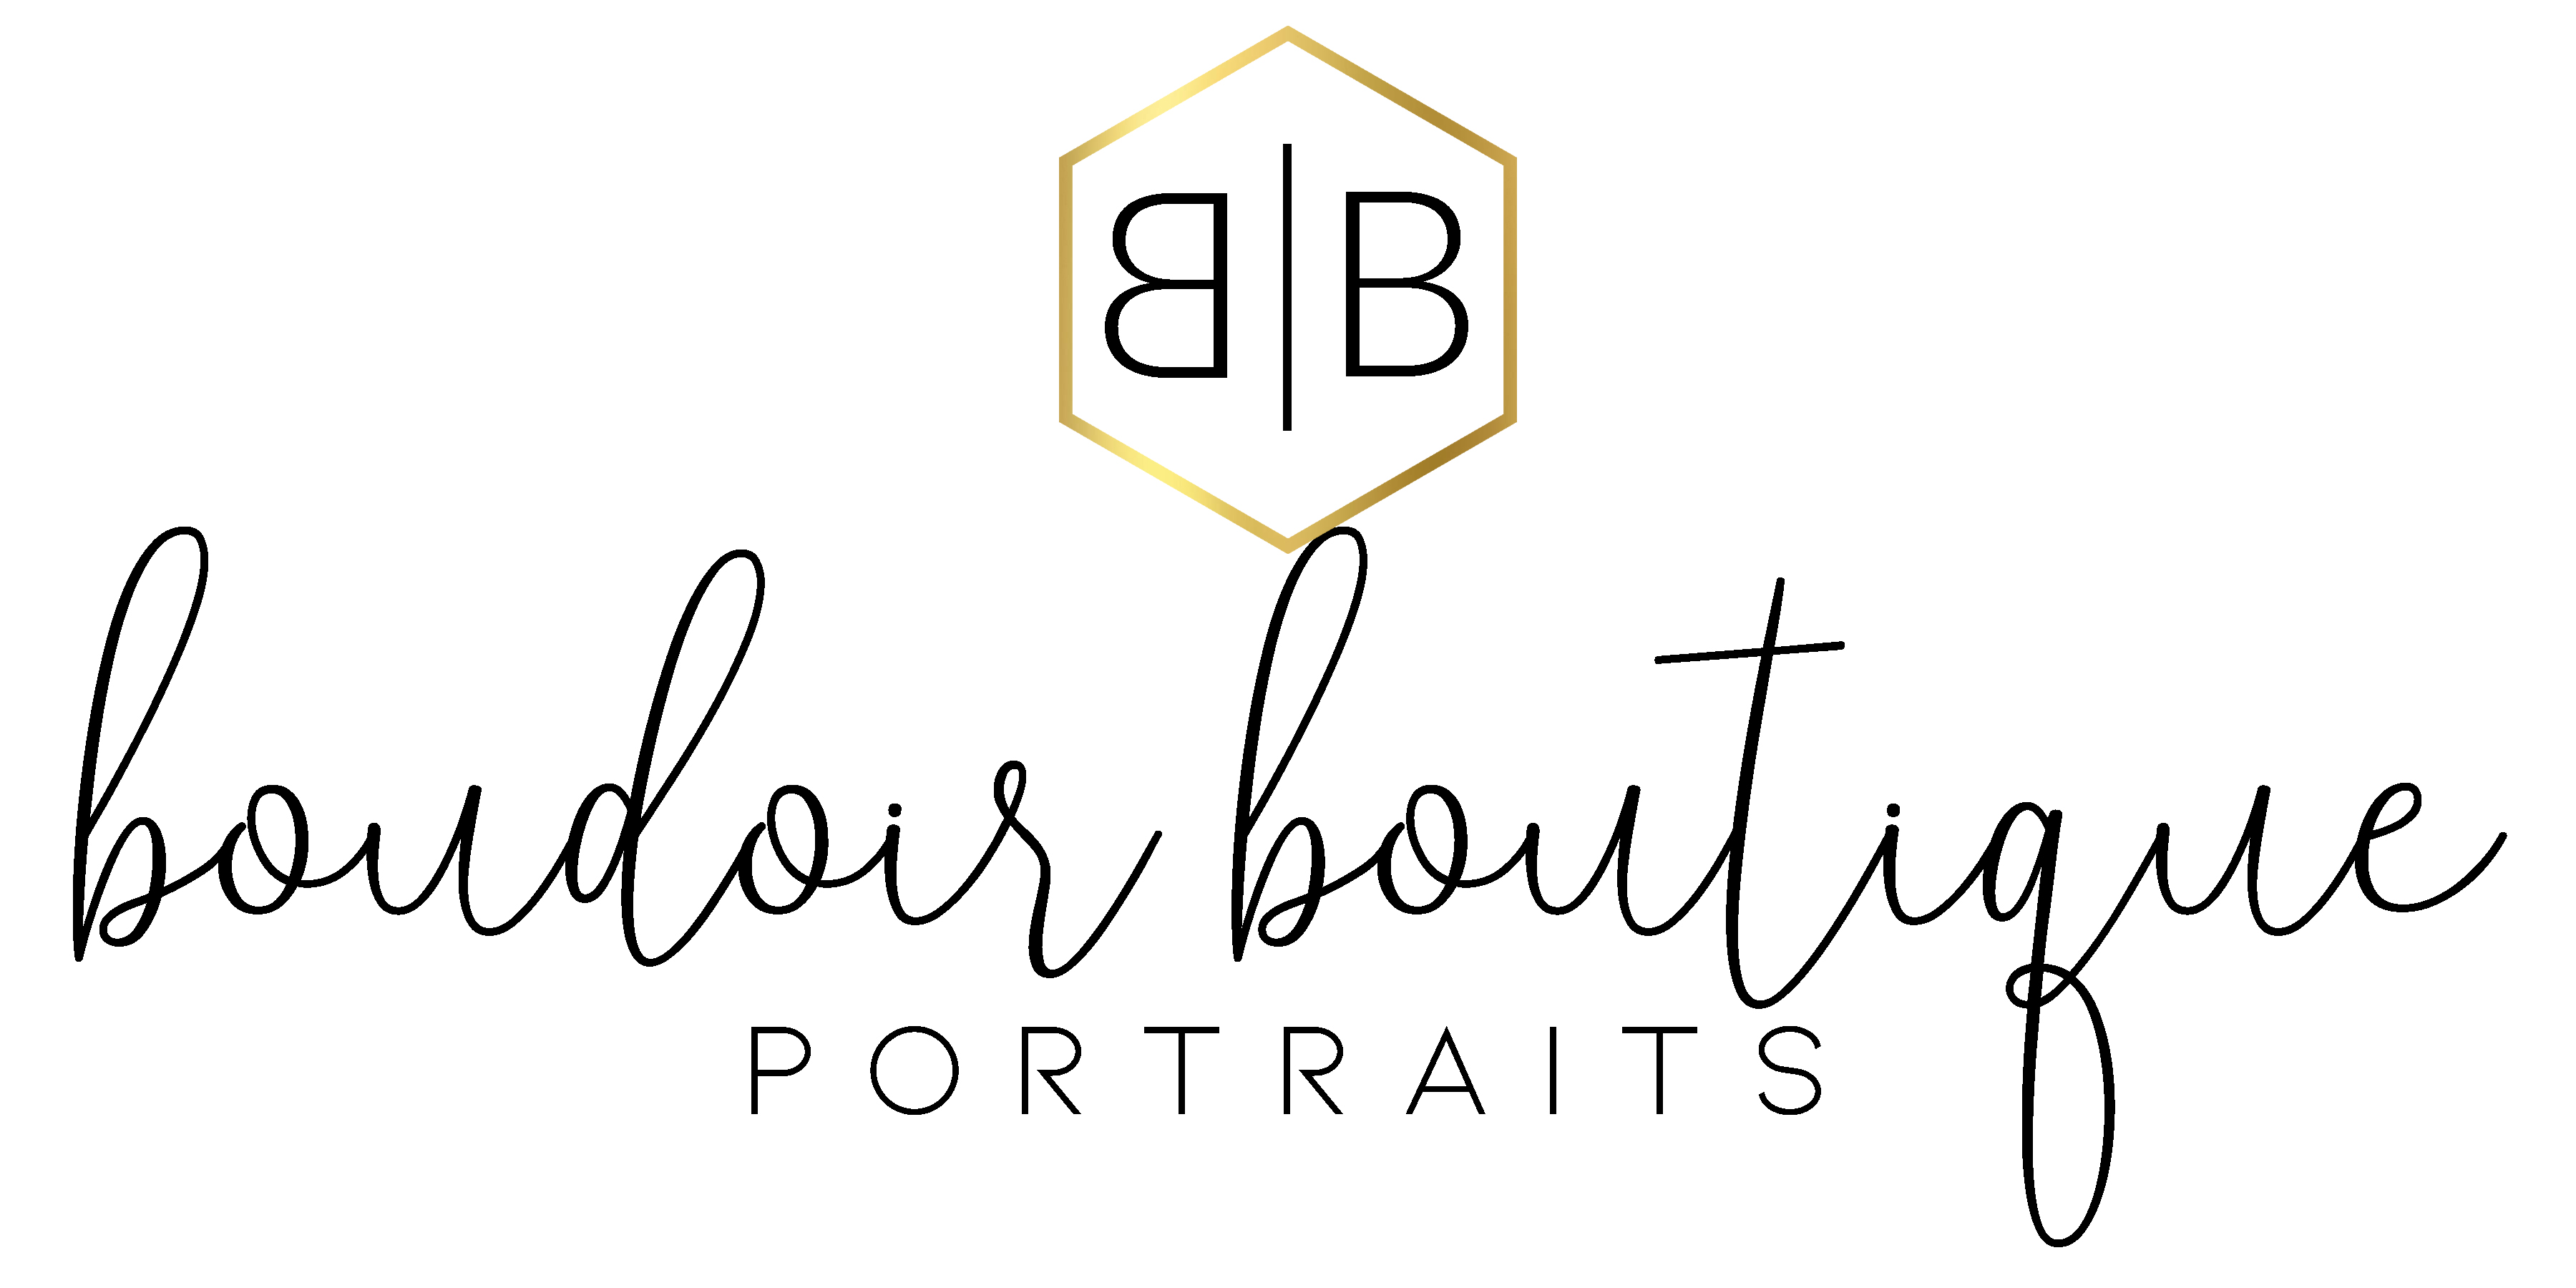 Portfolio » Boudoir Boutique Portraits